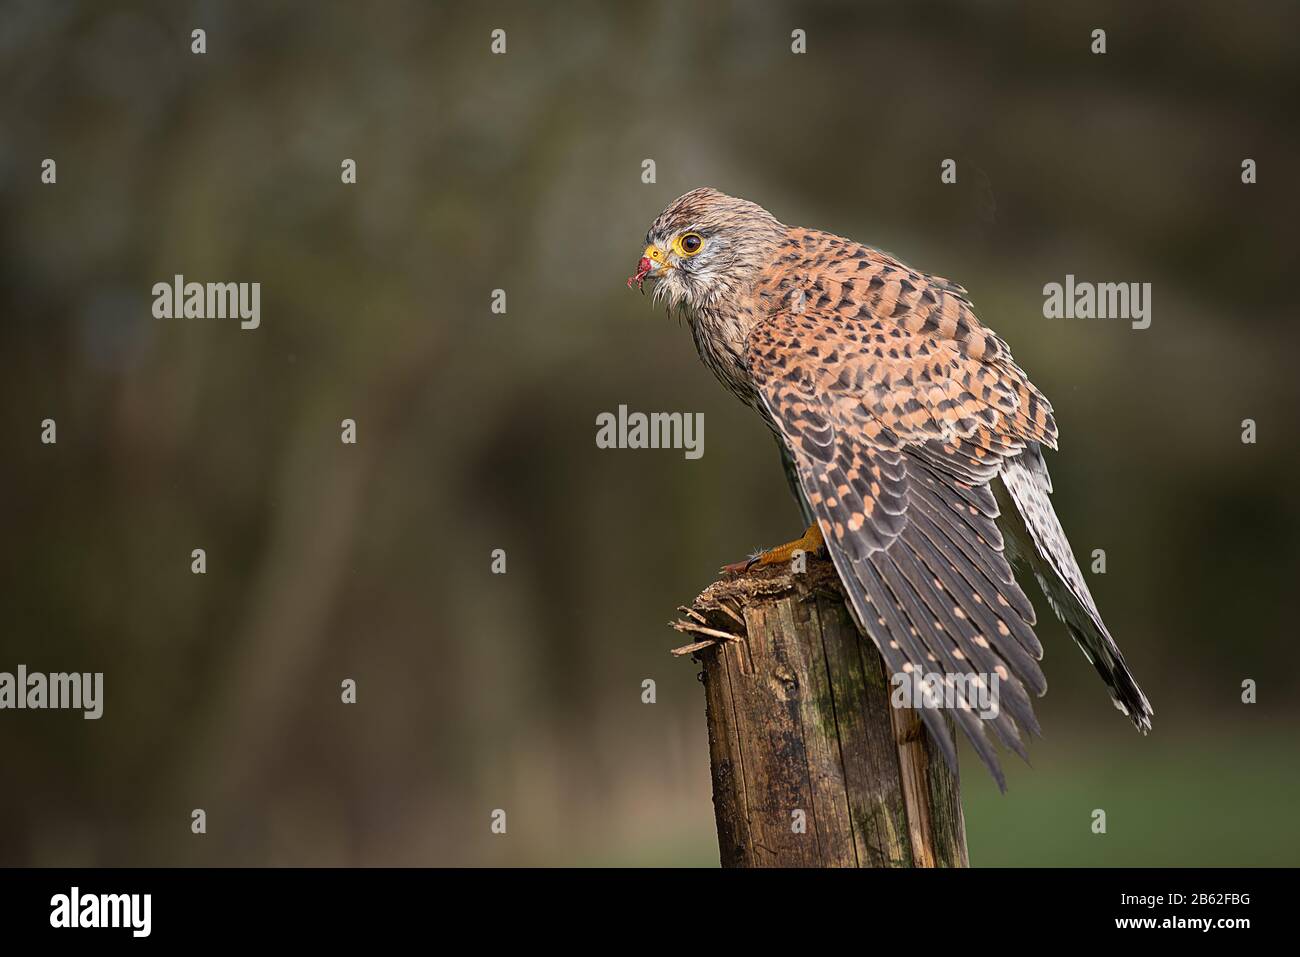 Portrait de profil d'une femelle de kestrel, Falco tinnunculus, perché sur un poteau en bois manling pour couvrir sa proie d'autres prédateurs Banque D'Images